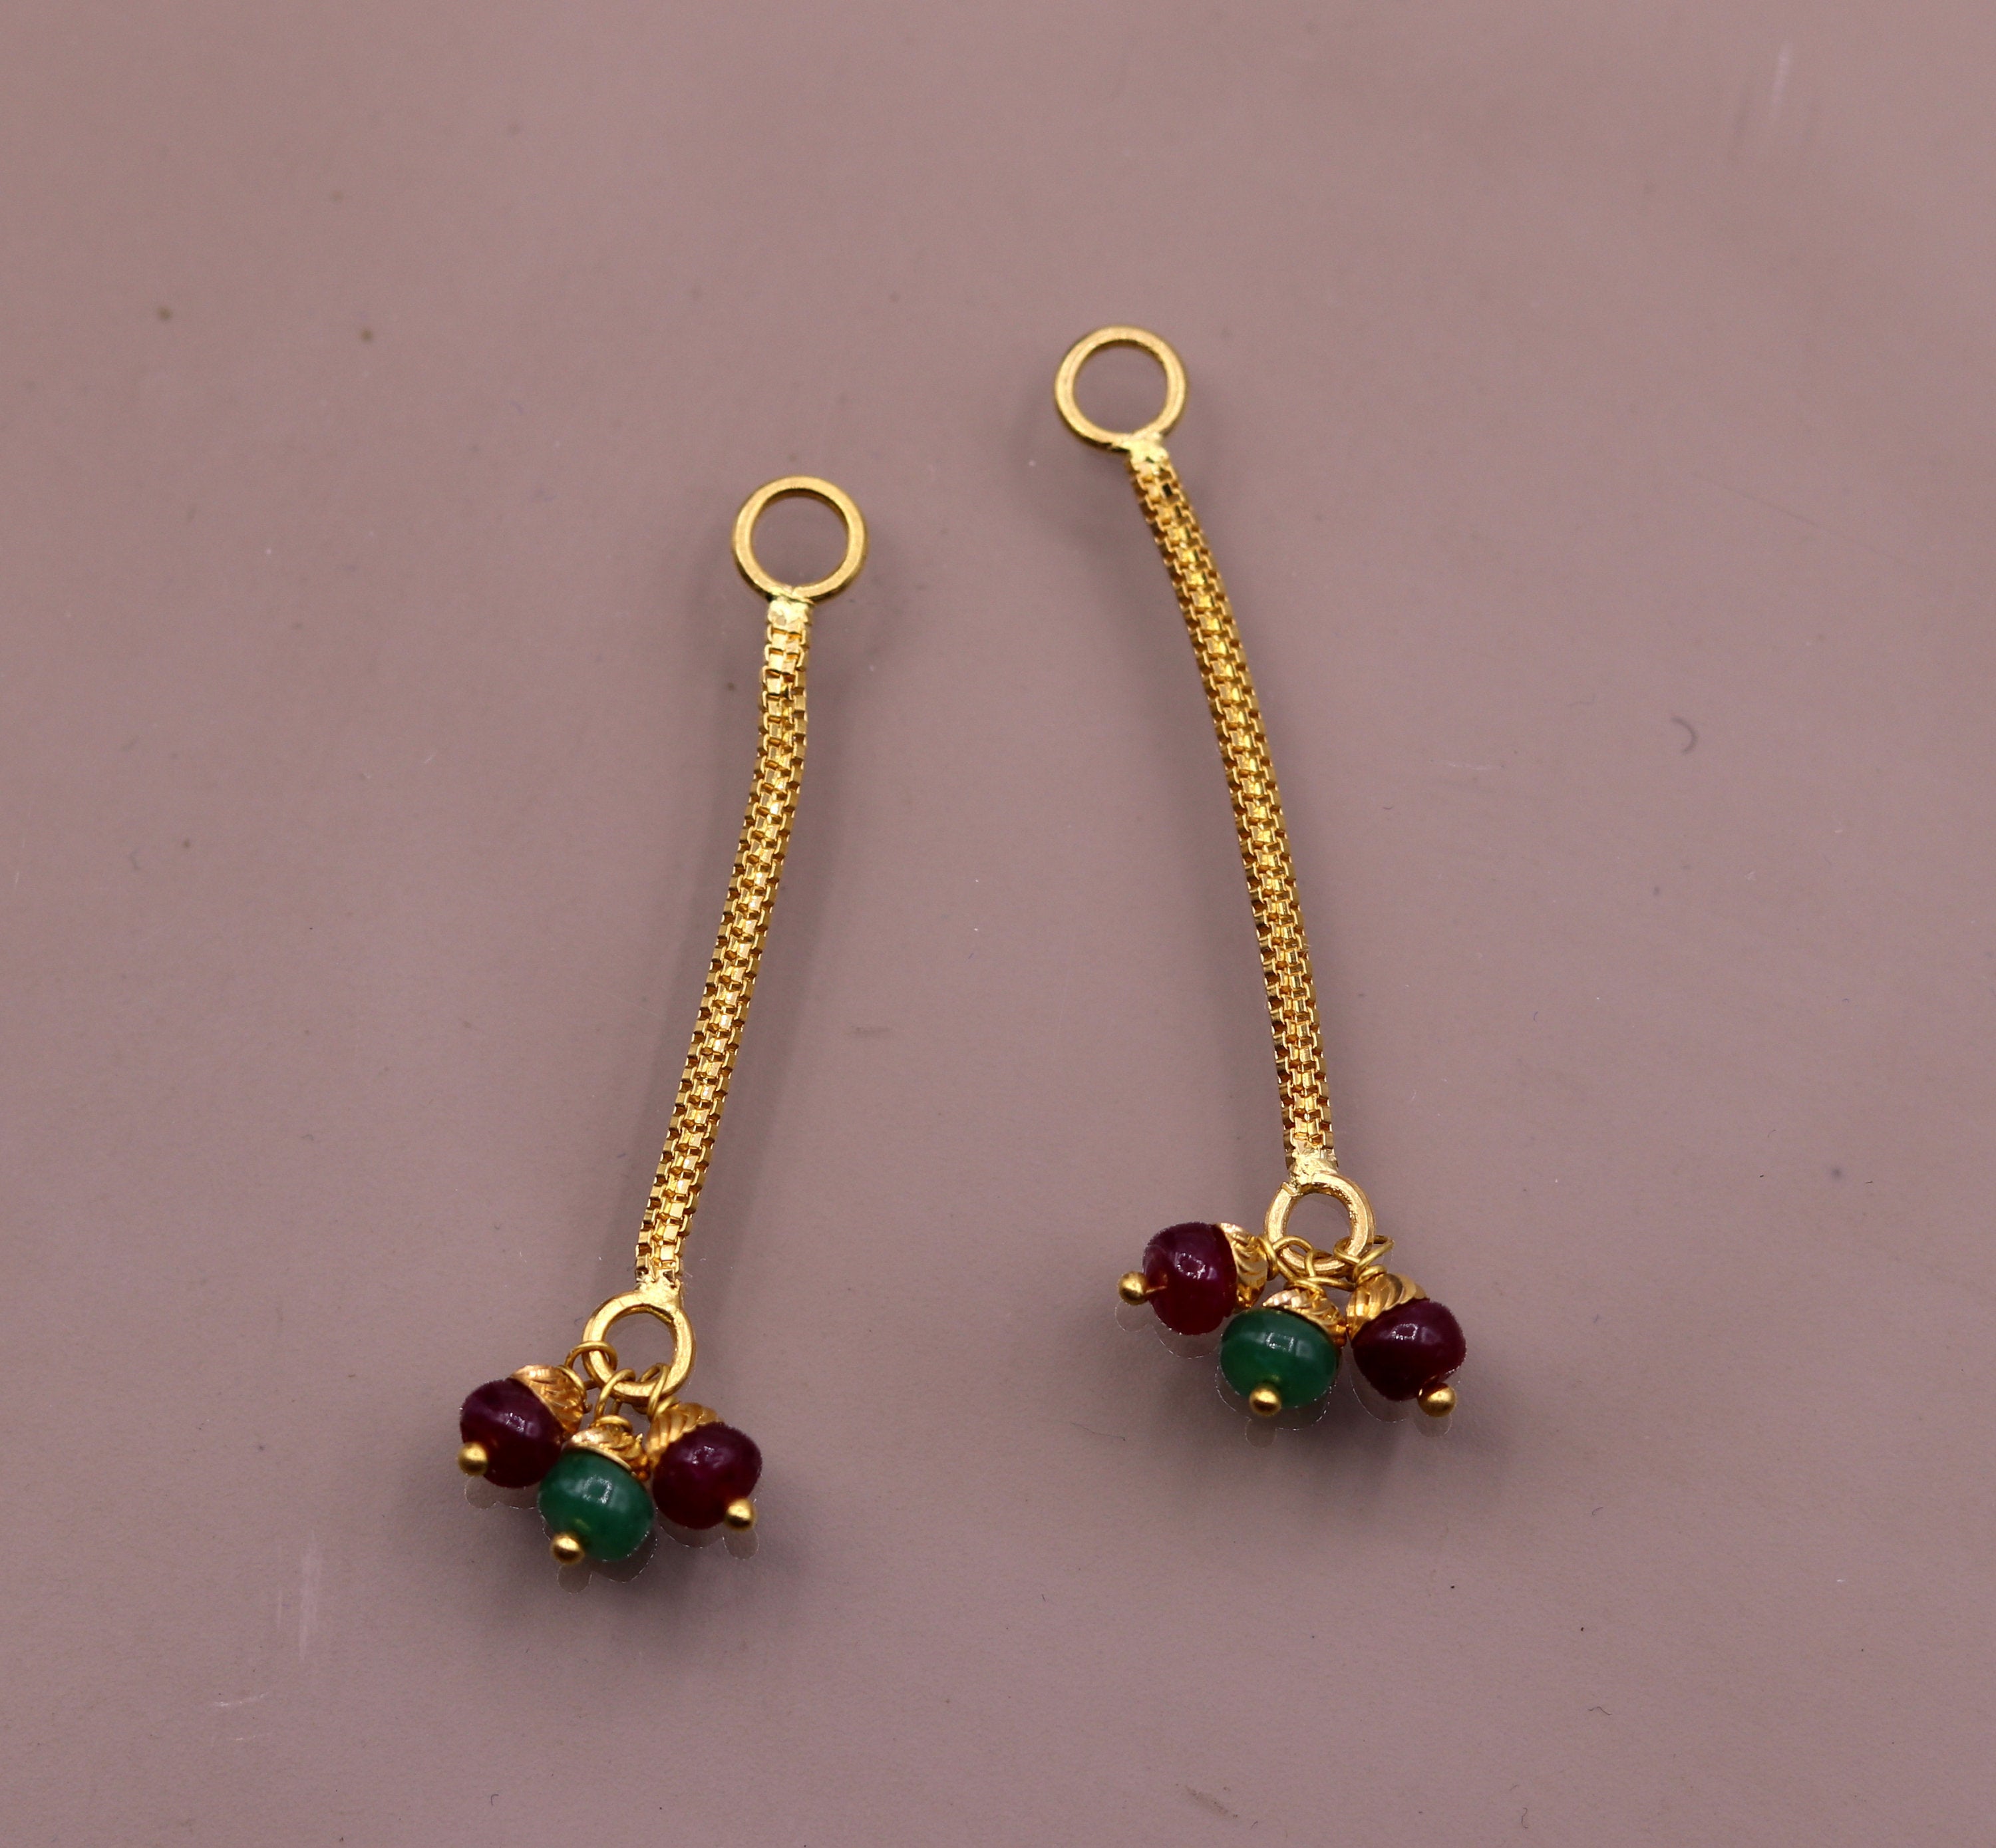 Buy quality Calcutti Fancy Hanging 22k Gold Earring in Rajkot